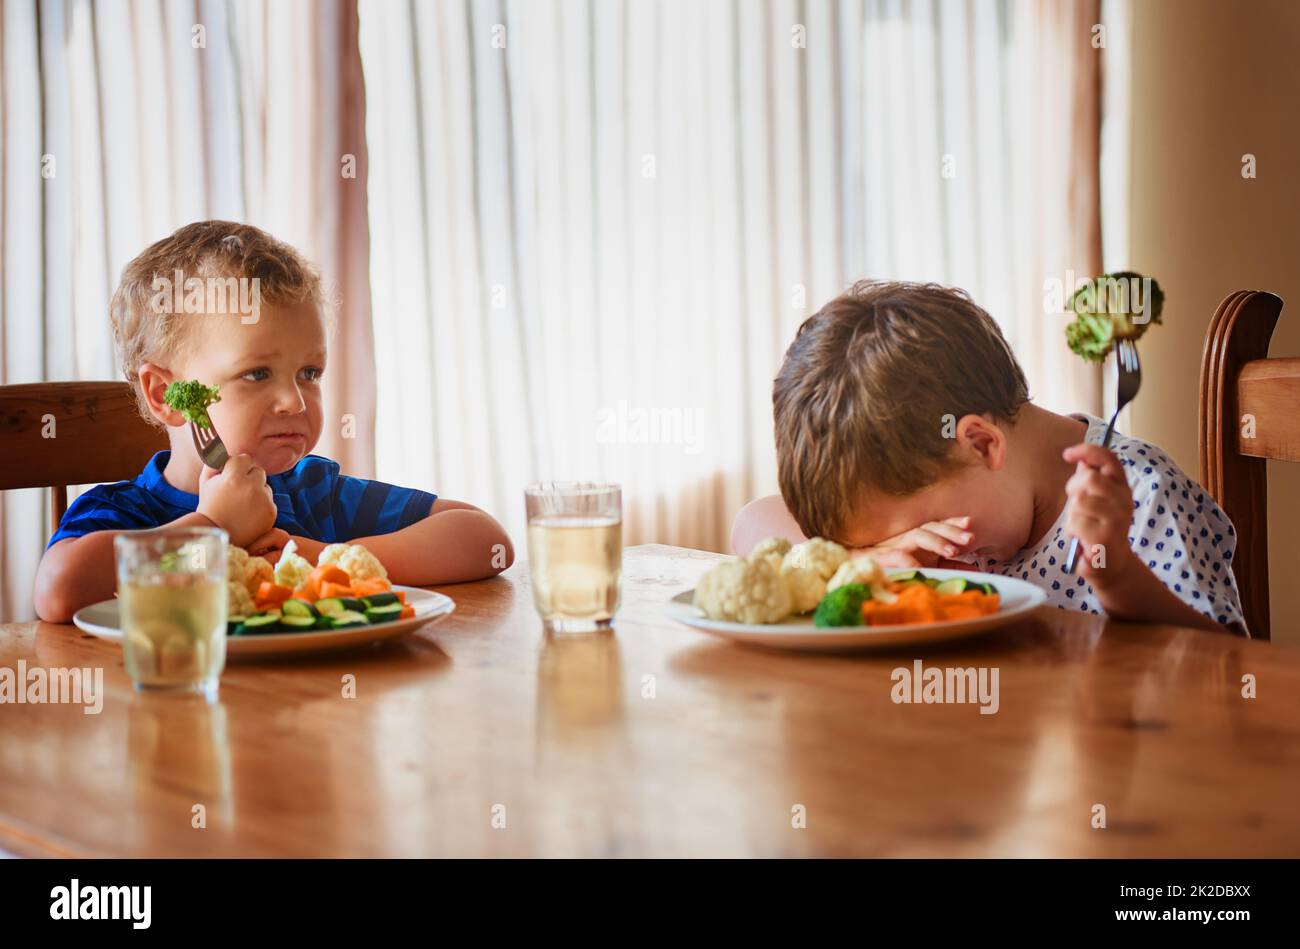 Das war's, sie traten in einen Hungerstreik. Aufnahme von zwei unglücklichen kleinen Jungen, die sich weigern, ihr Gemüse am Esstisch zu essen. Stockfoto